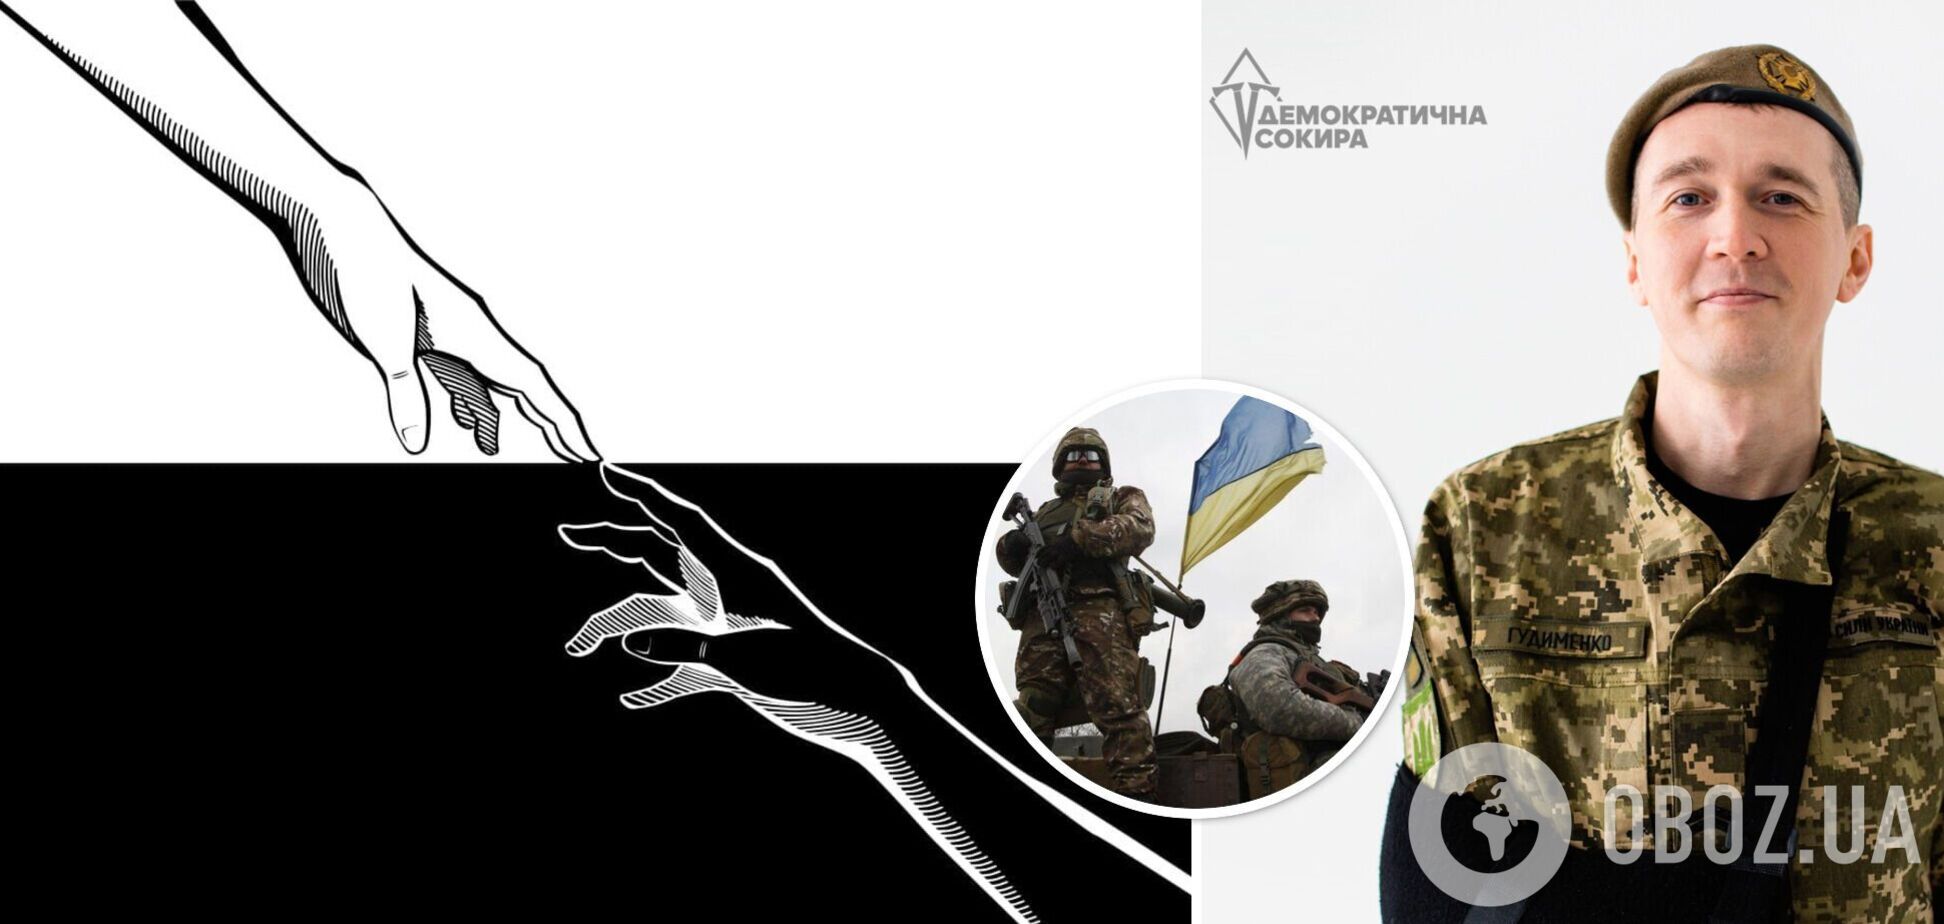 'Ви не забуті': Гудименко запропонував ВР створити прапор пам'яті для українських воїнів